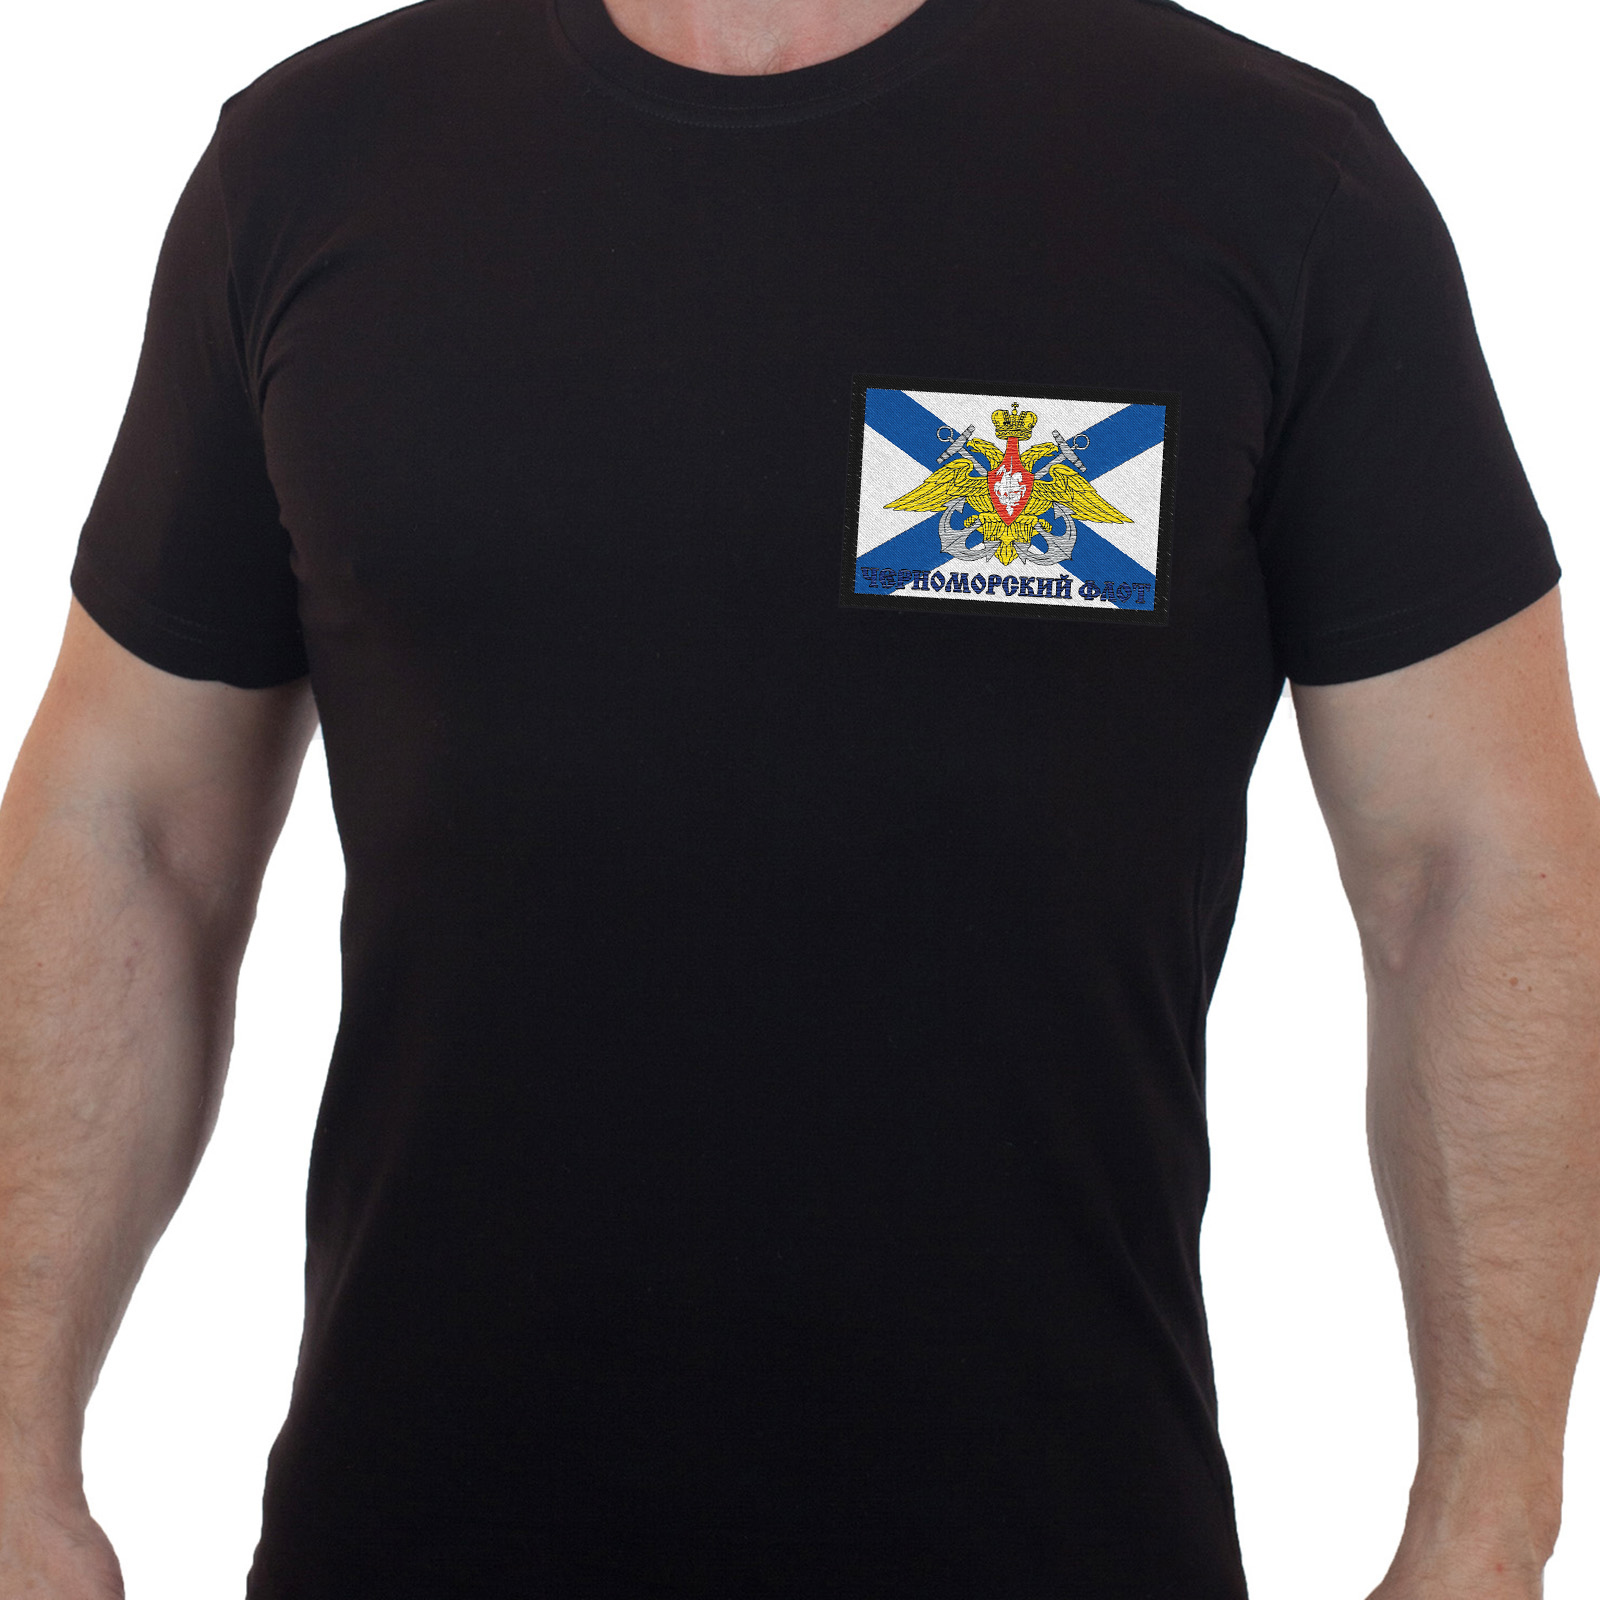 Купить строгую мужскую футболку с вышивкой Черноморский Флот по выгодной цене